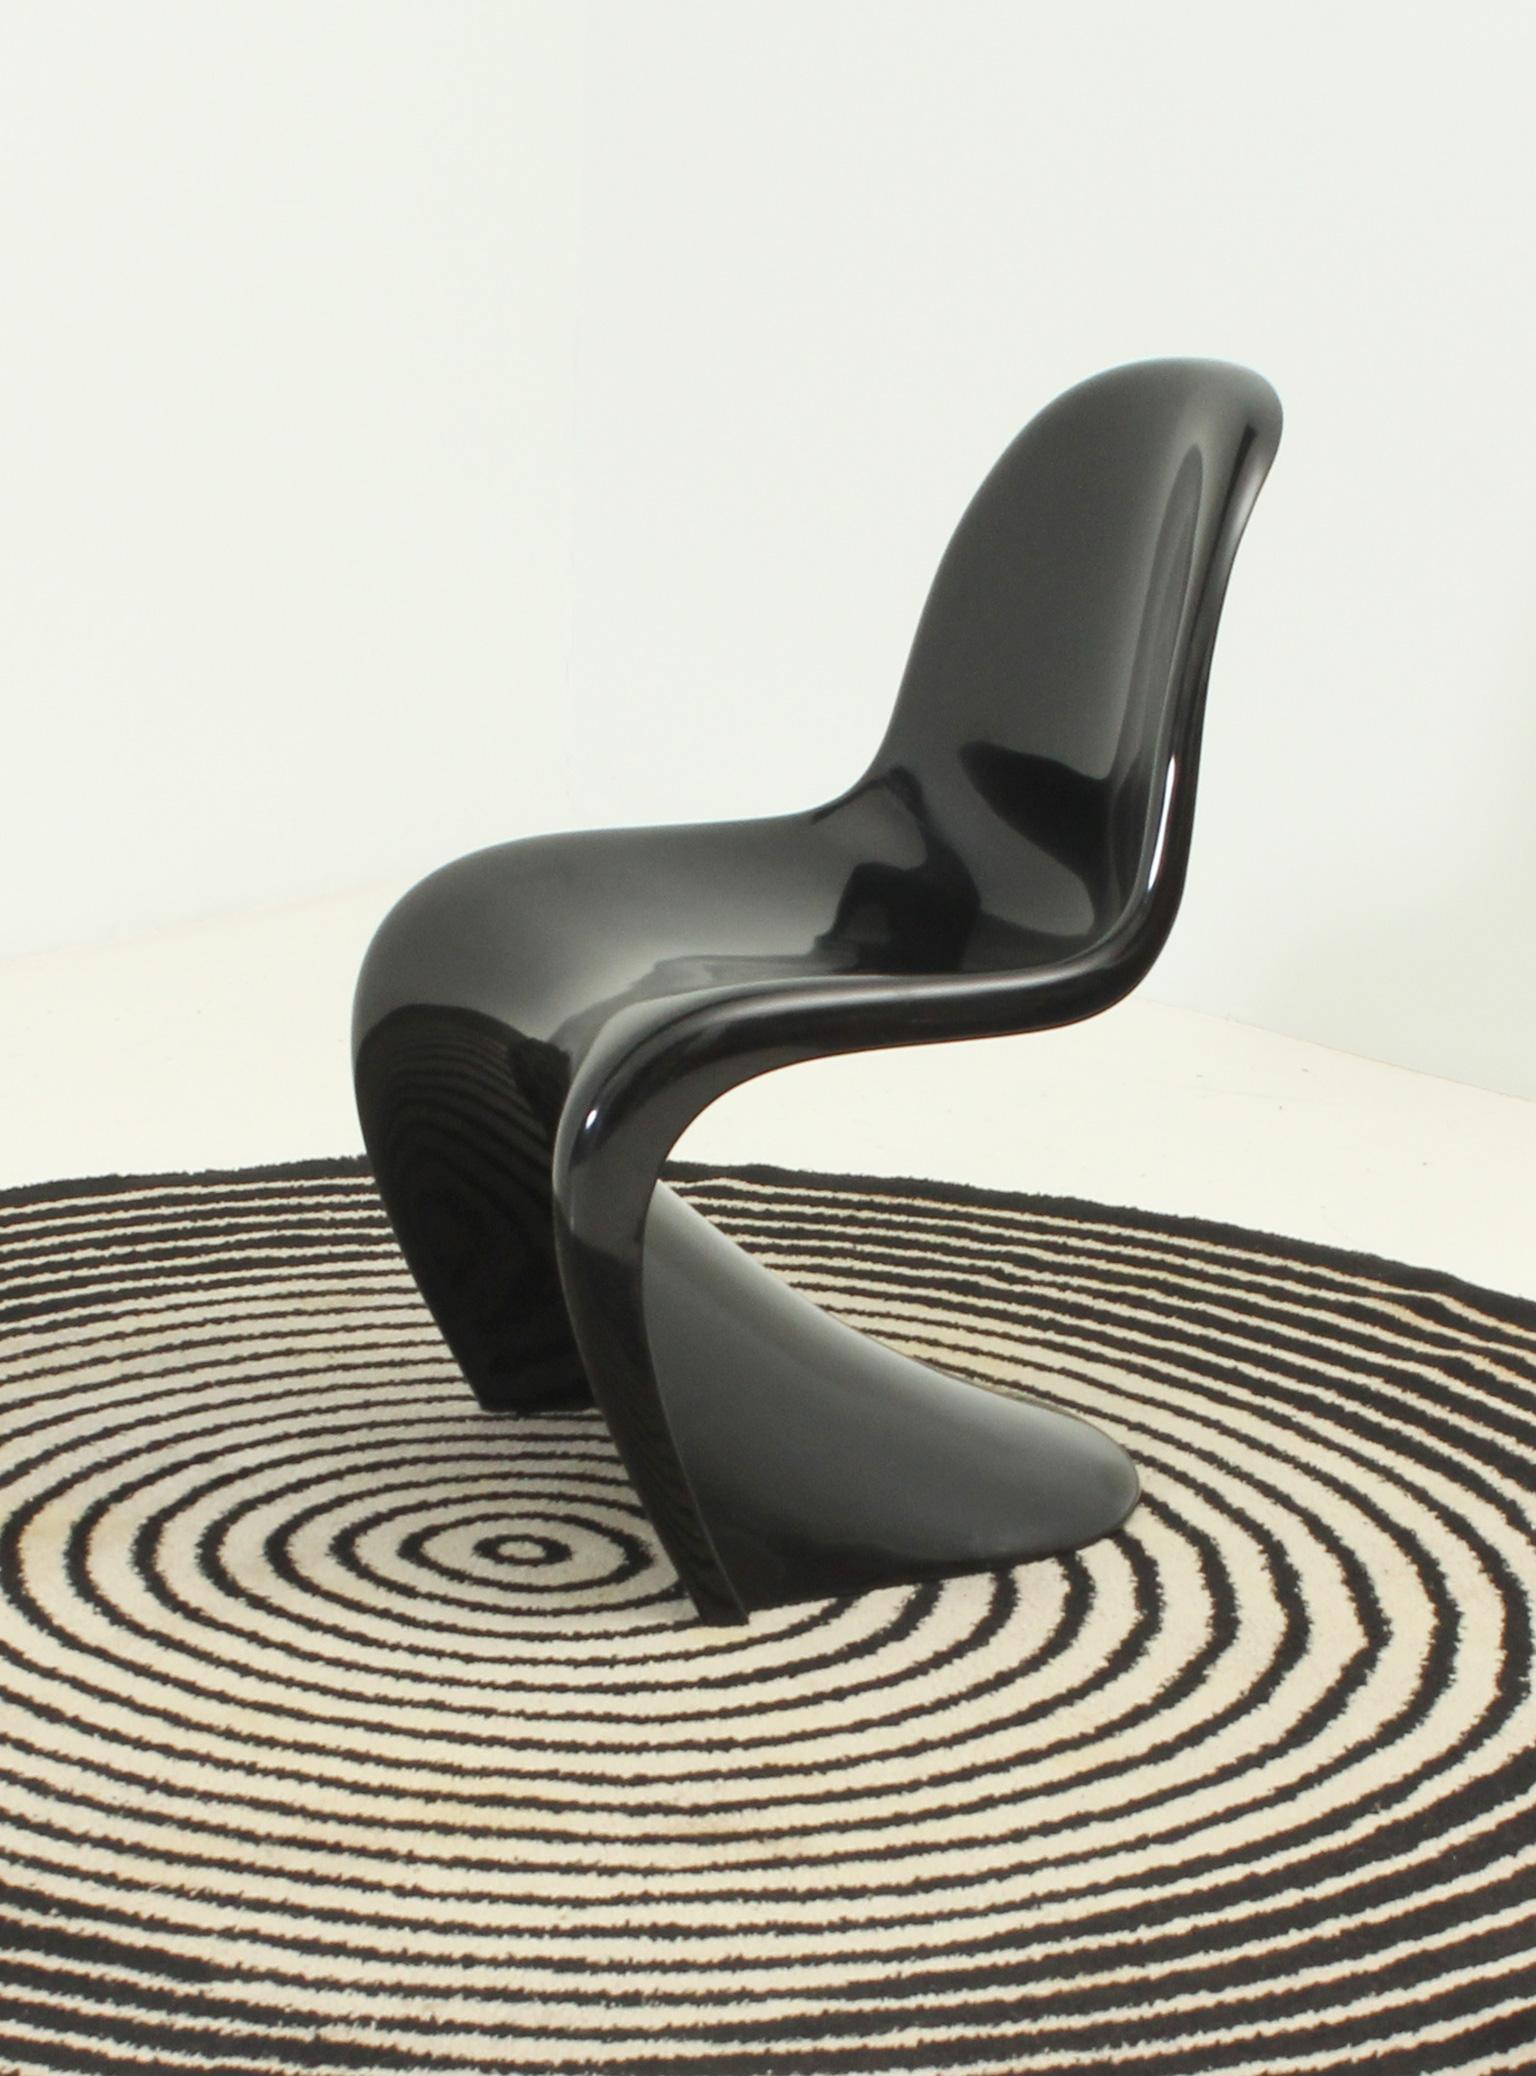 Chaise d'appoint conçue par Verner Panton en 1967 pour Herman Miller - production Fehlbaum, Allemagne. Celui-ci est estampillé en 1971 en thermoplastique noir brillant.